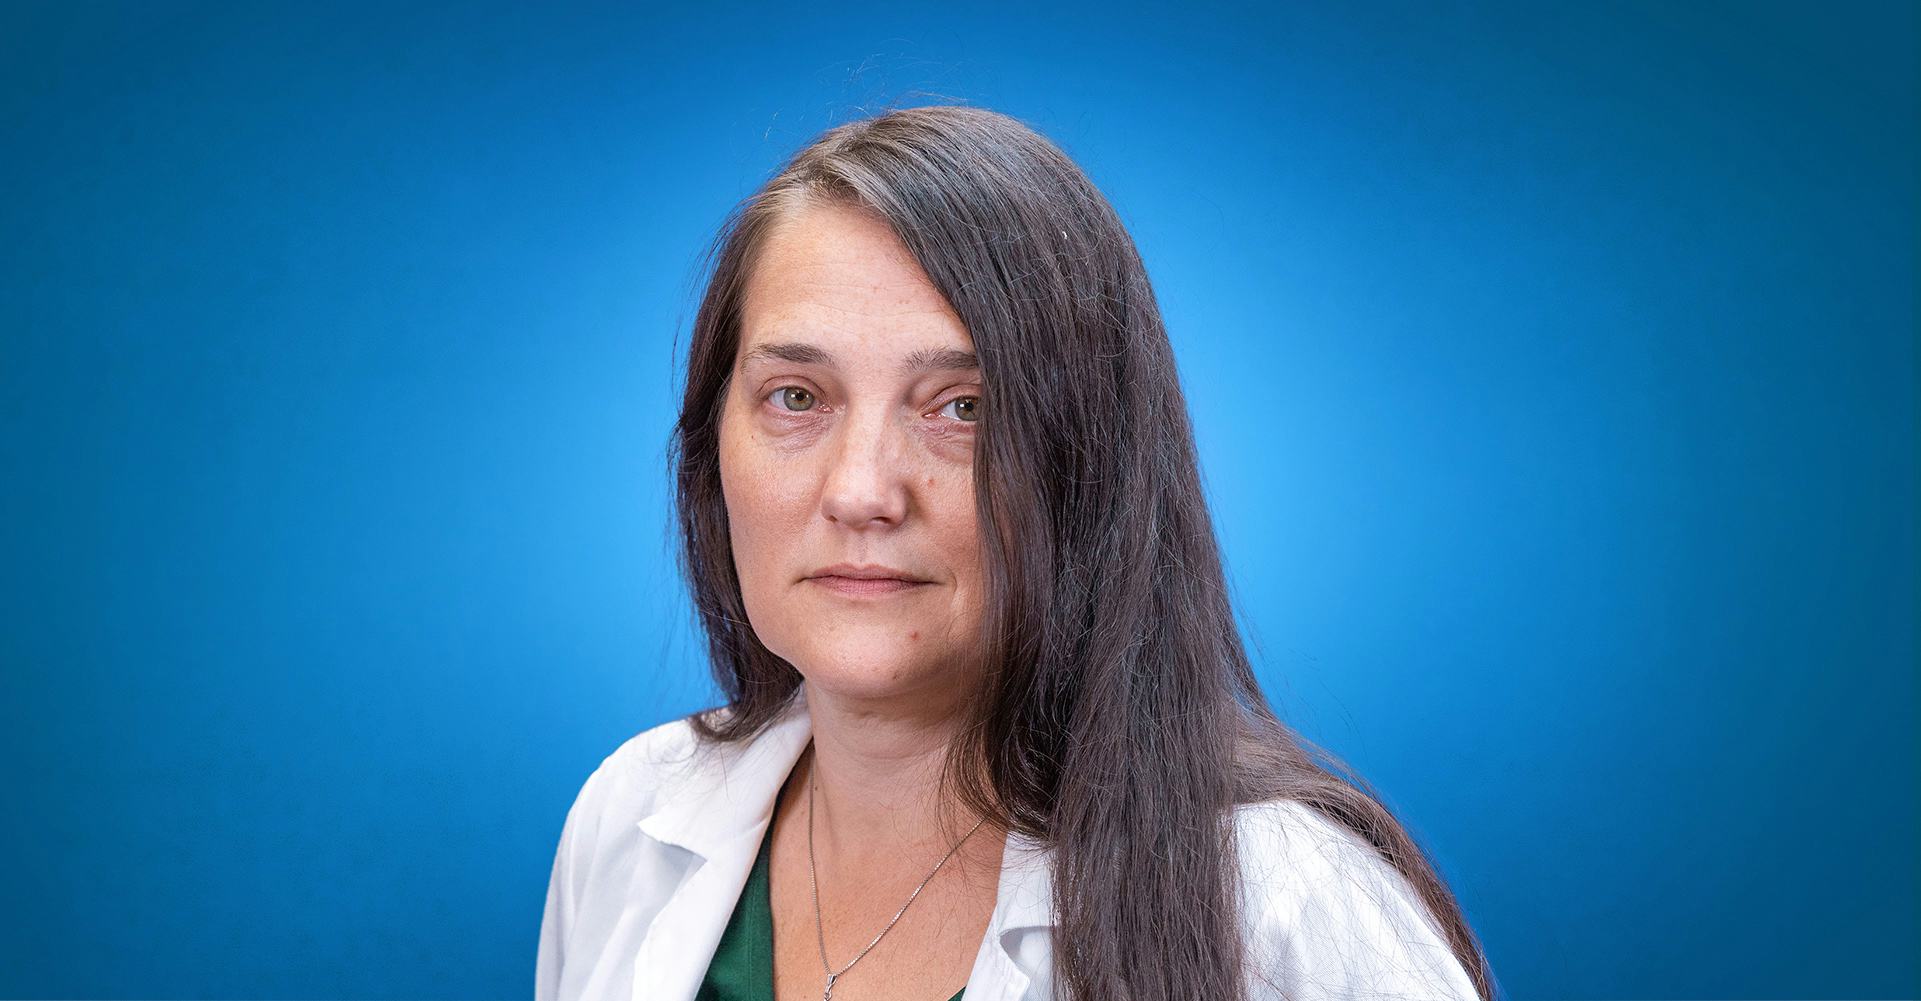 Dr. Miruna Danciu